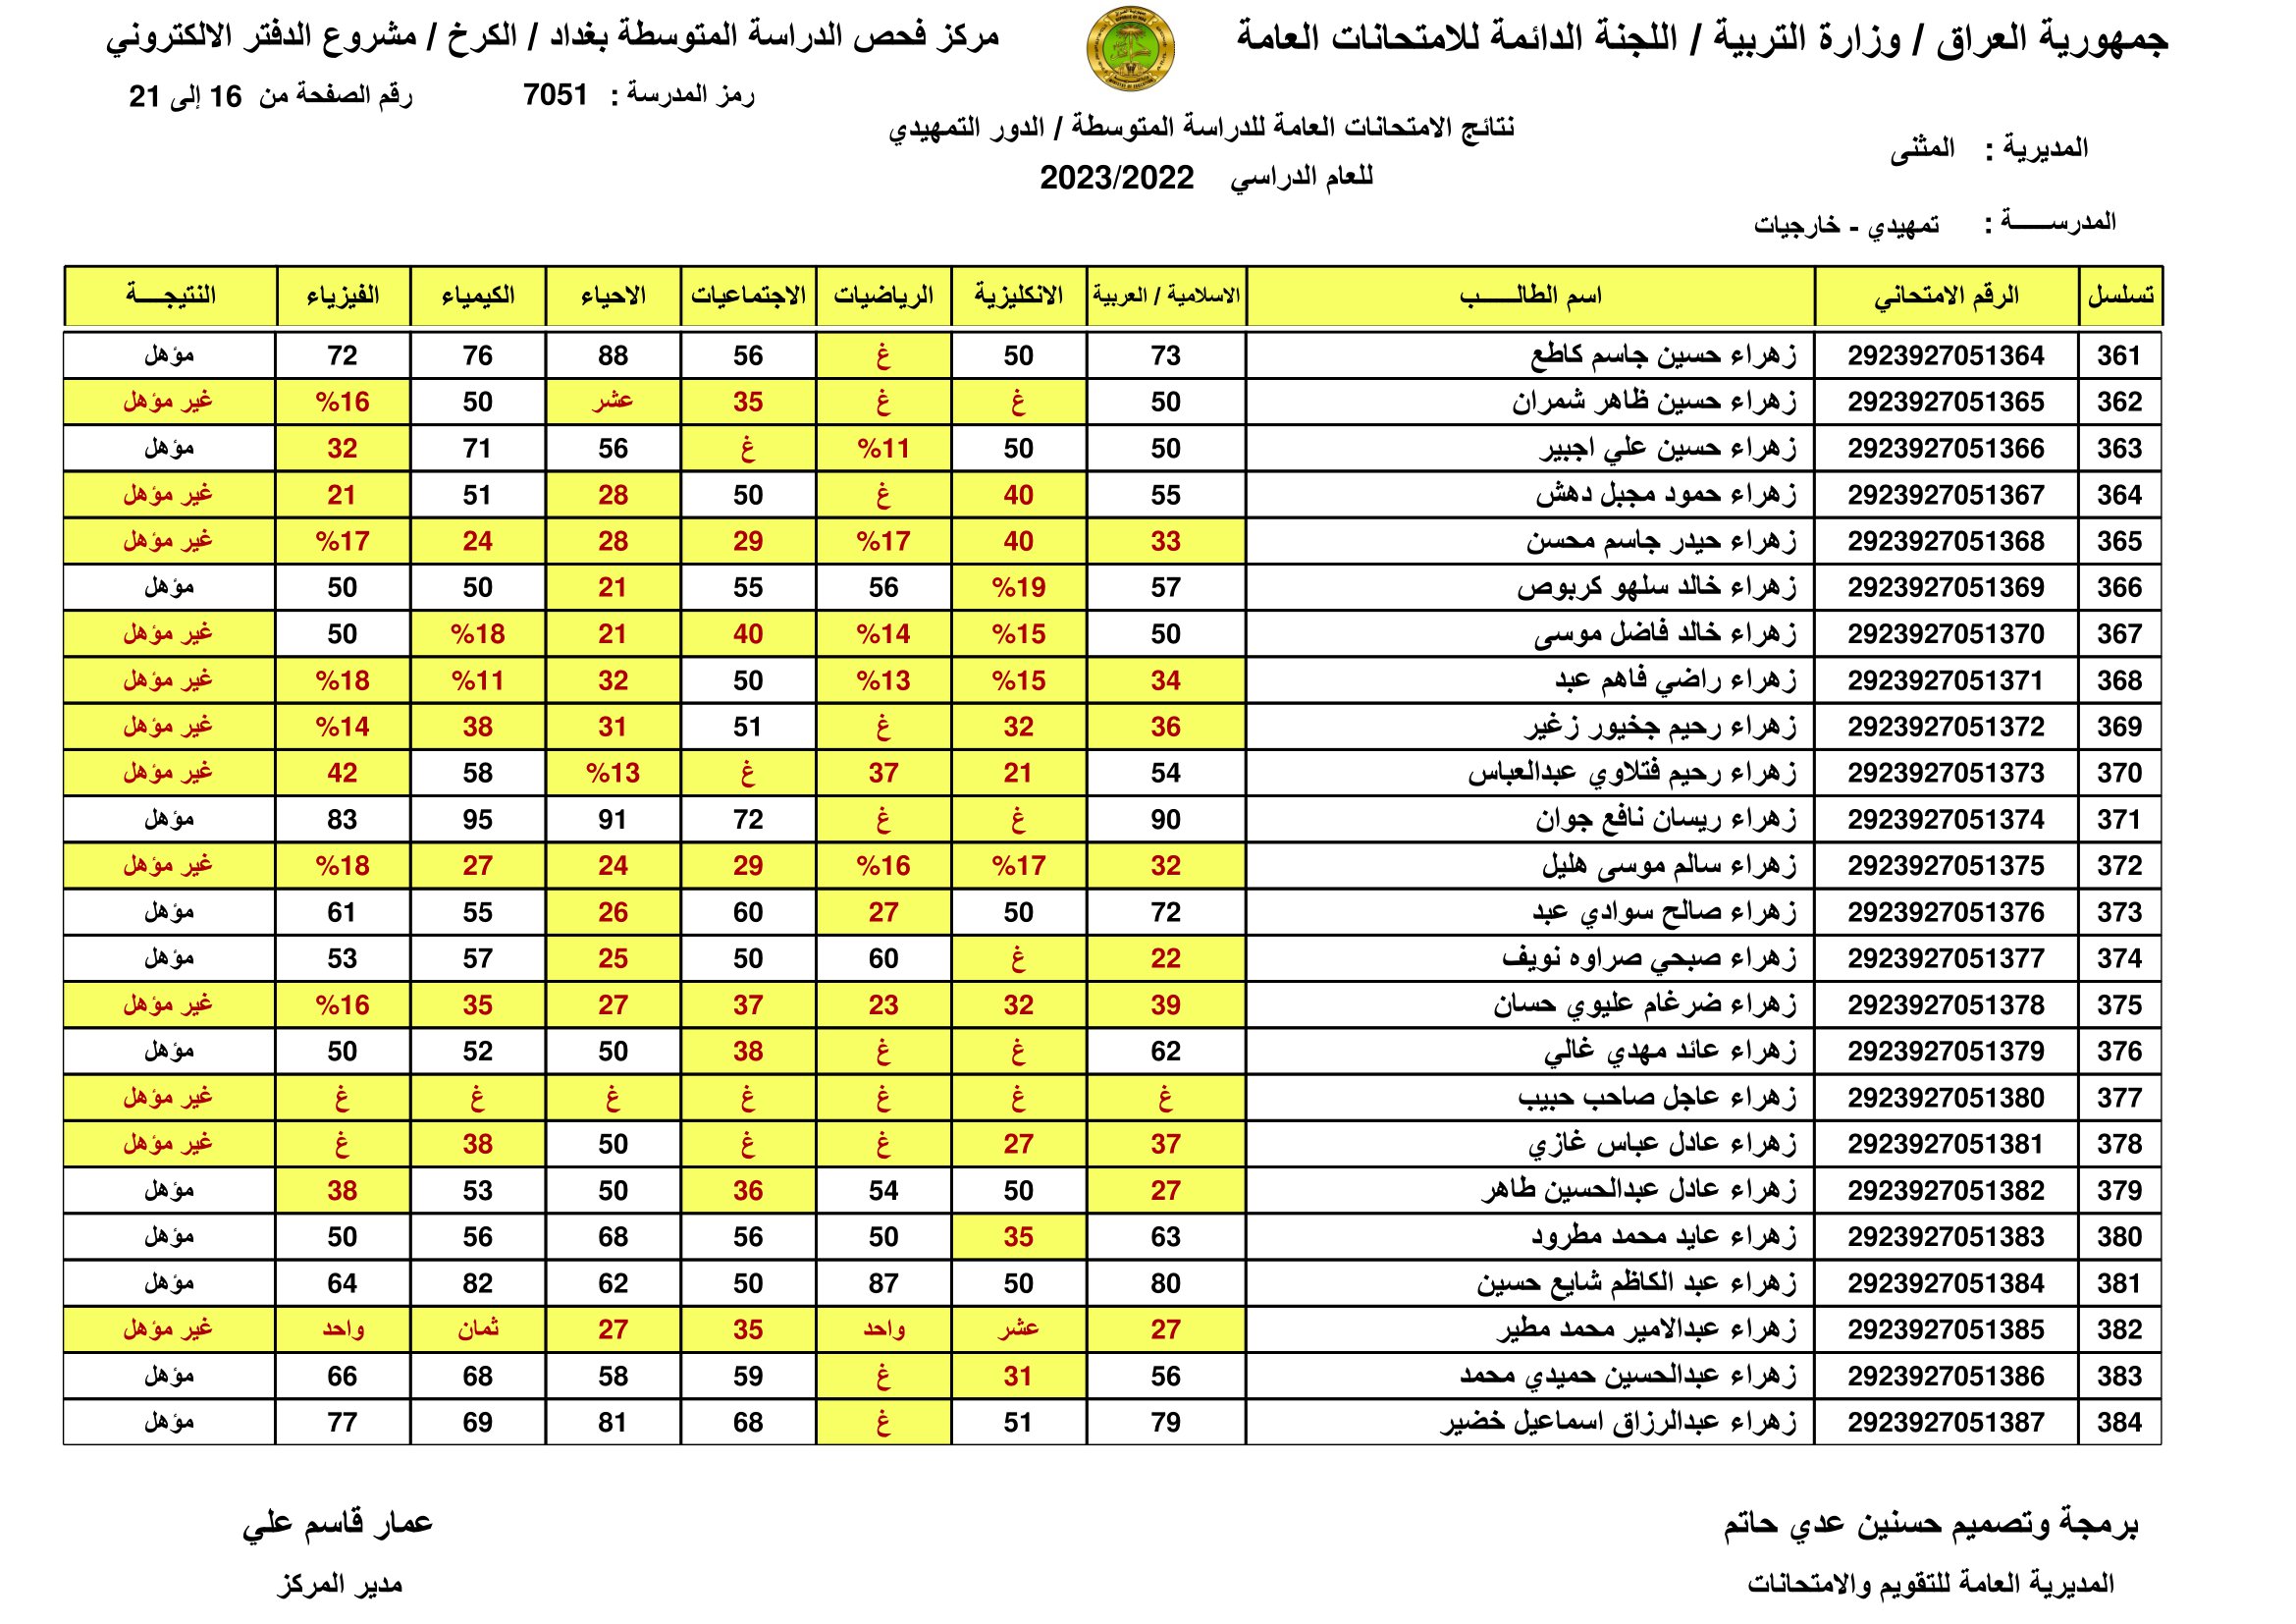 الان صدرت:: نتائج السادس الابتدائي الرصافة الثالثة 2023 نتائج سادسة ابتدائي رصافه 3 عبر موقع وزارة التربية العراقية 18